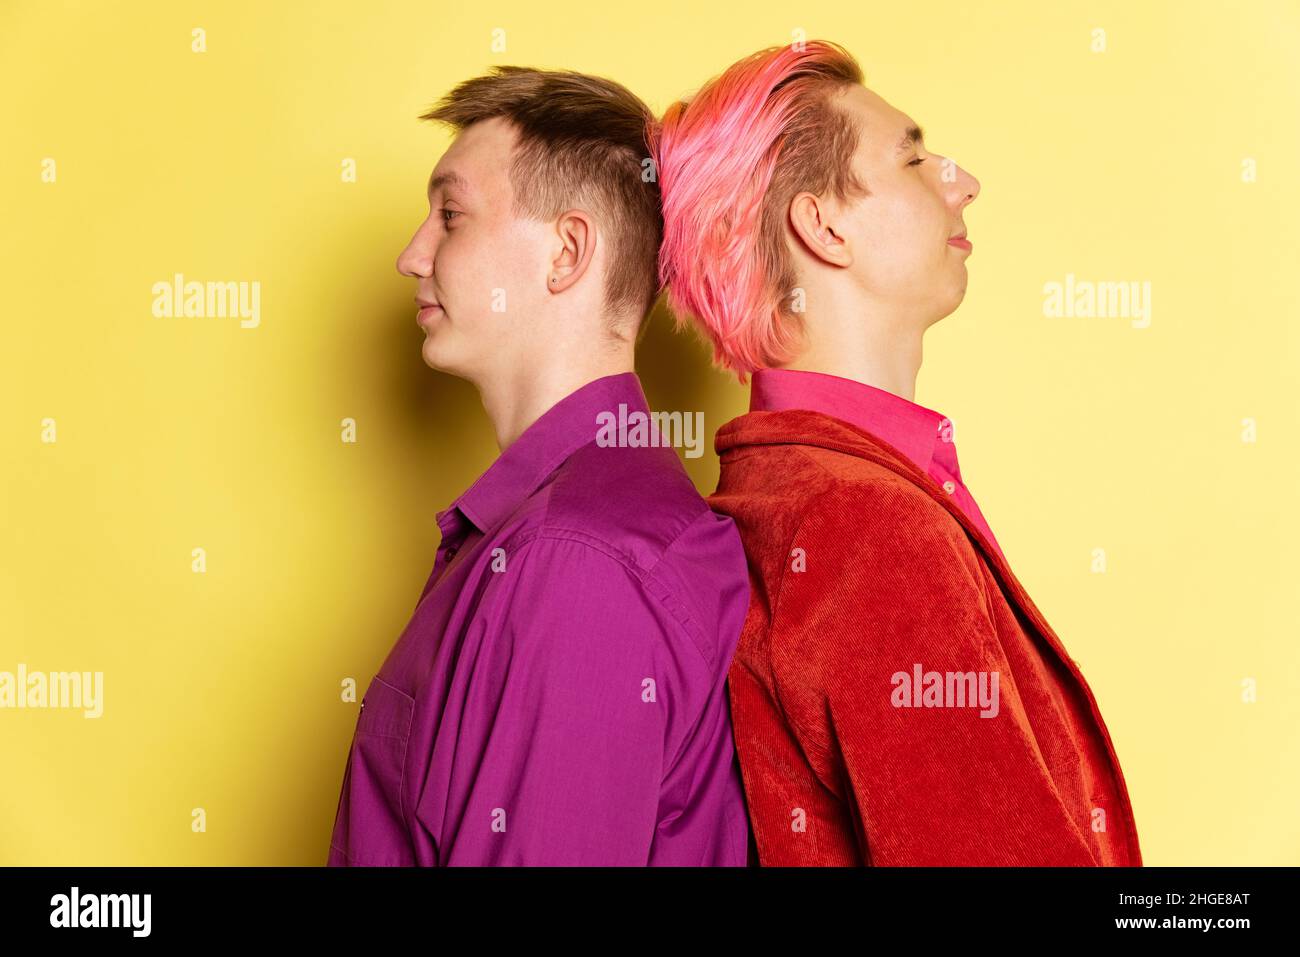 Gros plan deux jeunes hommes, couple posant isolé sur fond jaune.Célébration de la Saint-Valentin.Concept des émotions, de l'amour, des relations, romantique Banque D'Images